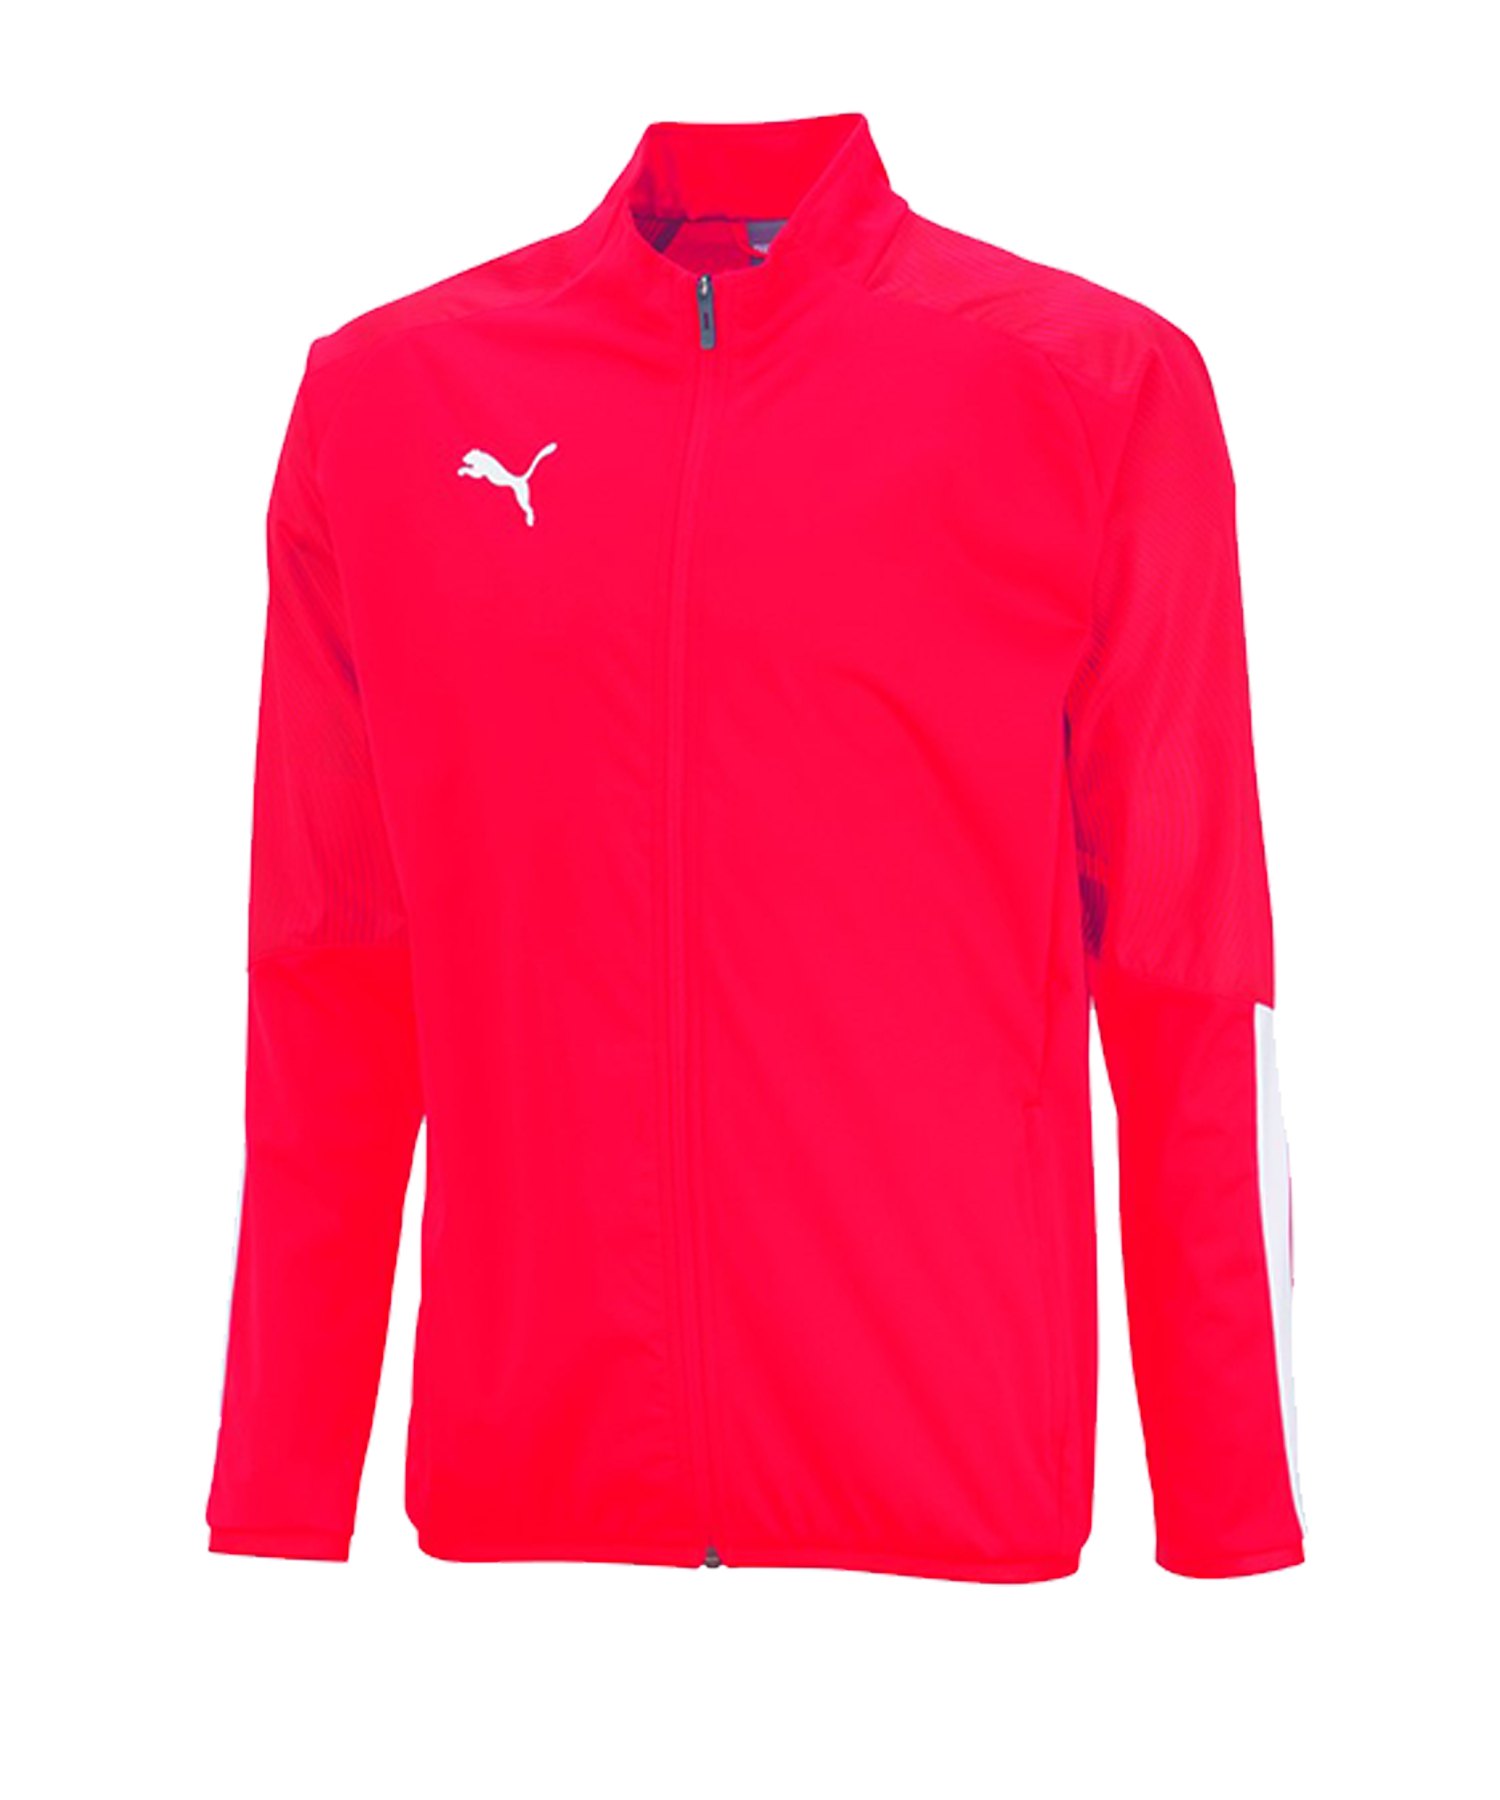 PUMA CUP Sideline Jacket Jacke Rot F01 - rot